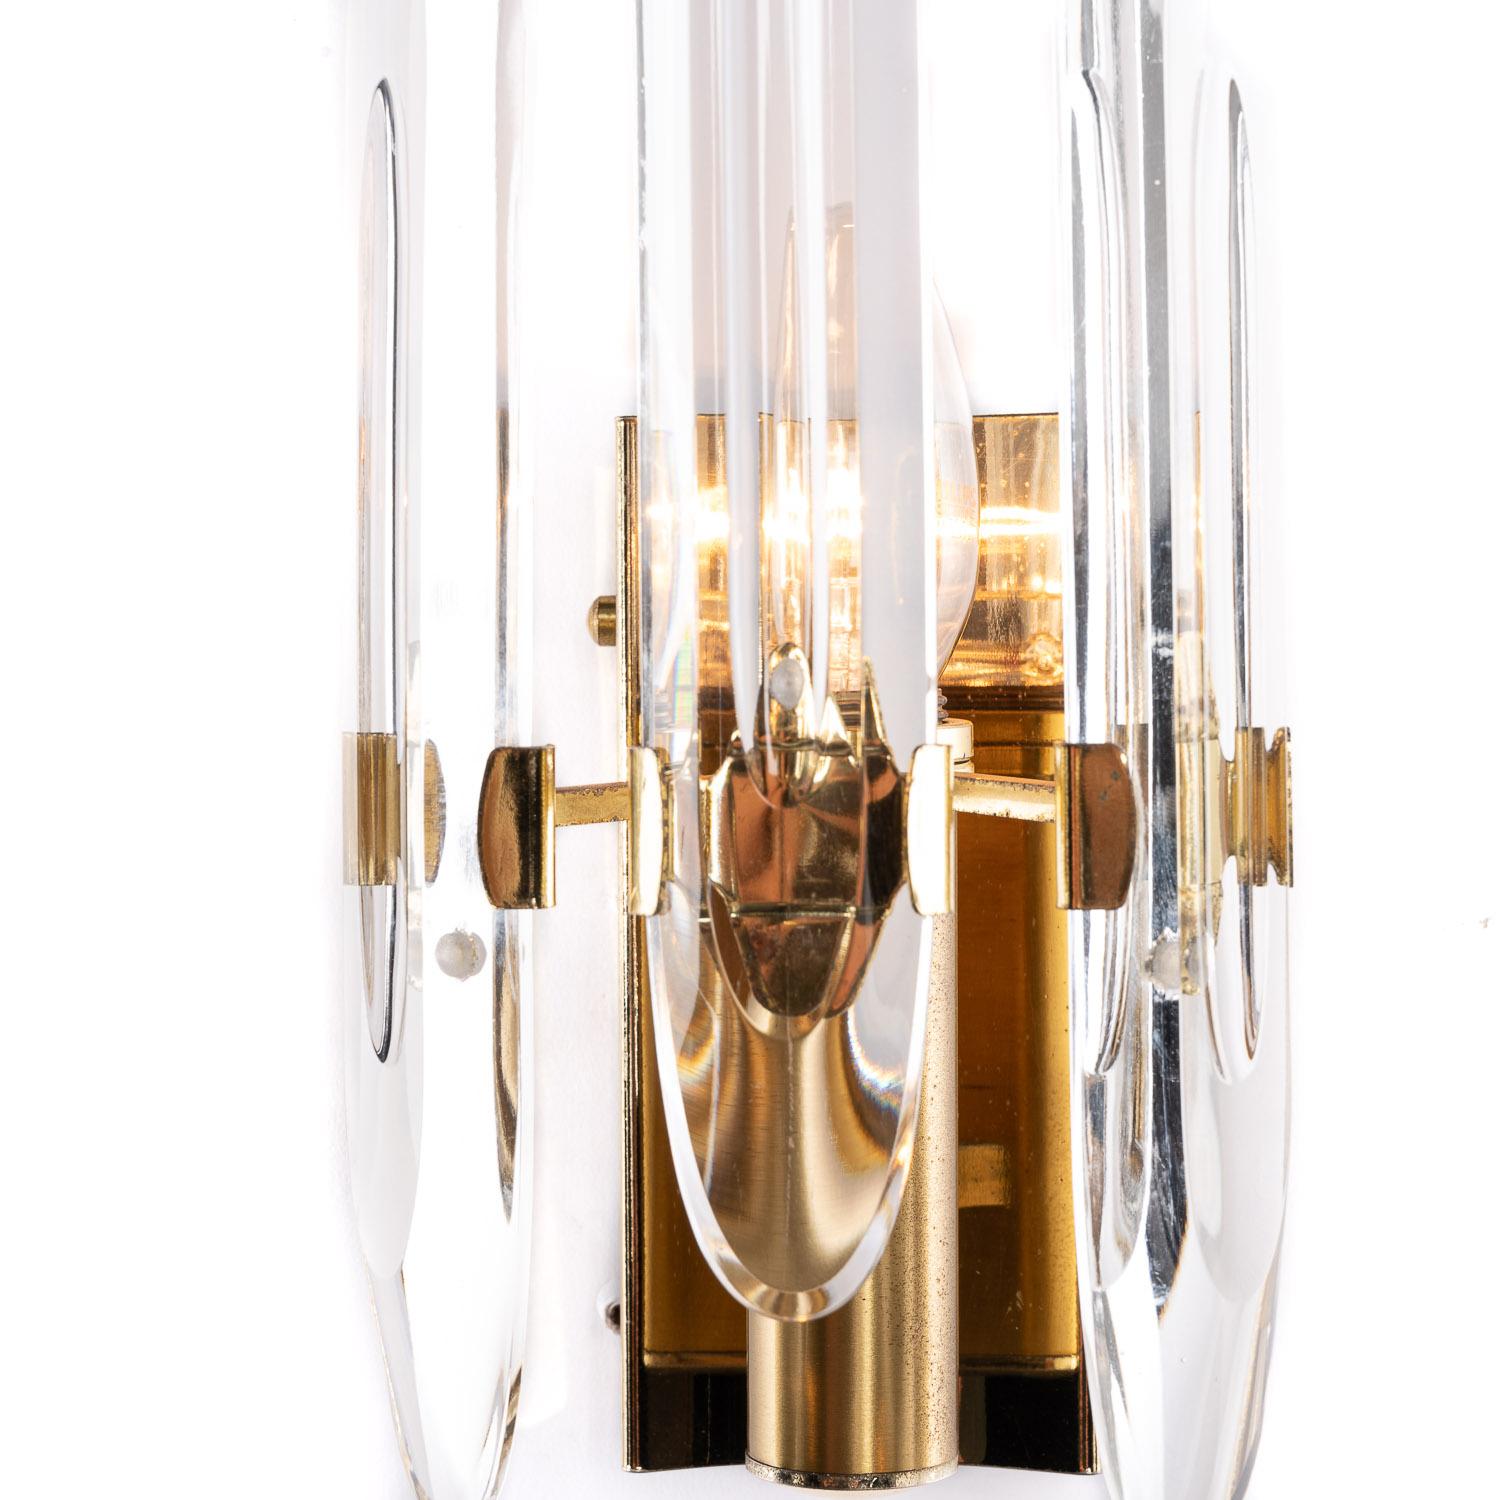 Klassische 1970er Jahre italienischen Gaetano Sciolari Design Sconces mit charakteristischen Verwendung von Kristallglas und Messingrahmen. Einige sind verwitterte Rahmen. 

Voll funktionsfähig und einsatzbereit. Ausgestattet mit einer europäischen